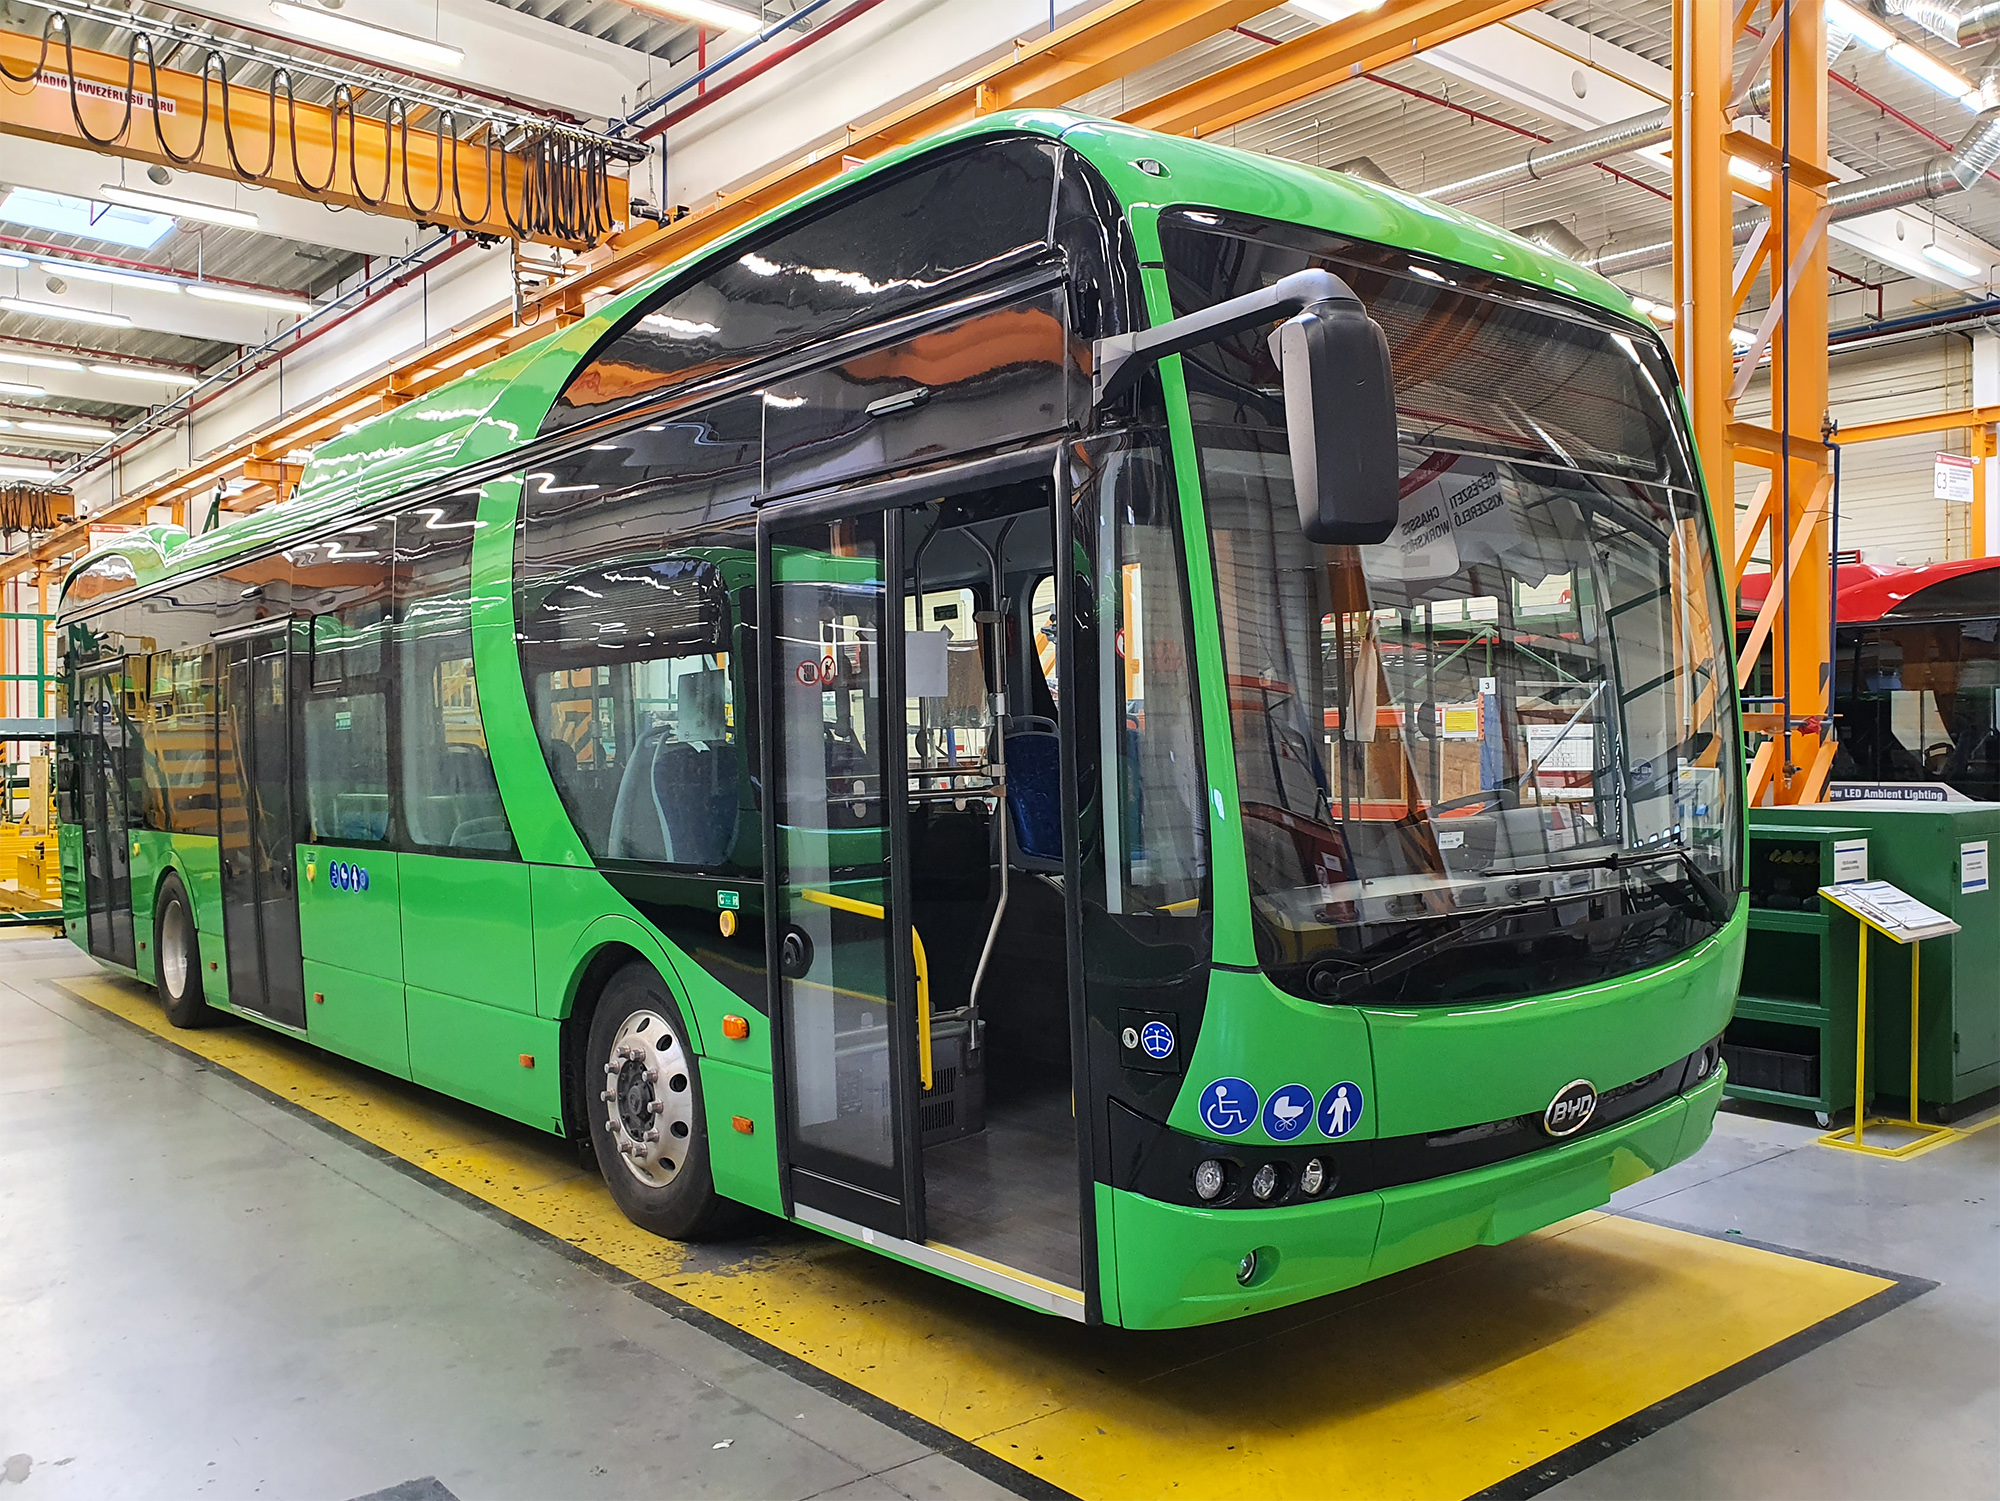 Ilyenek lesznek Pécs vadonatúj BYD villanybuszai